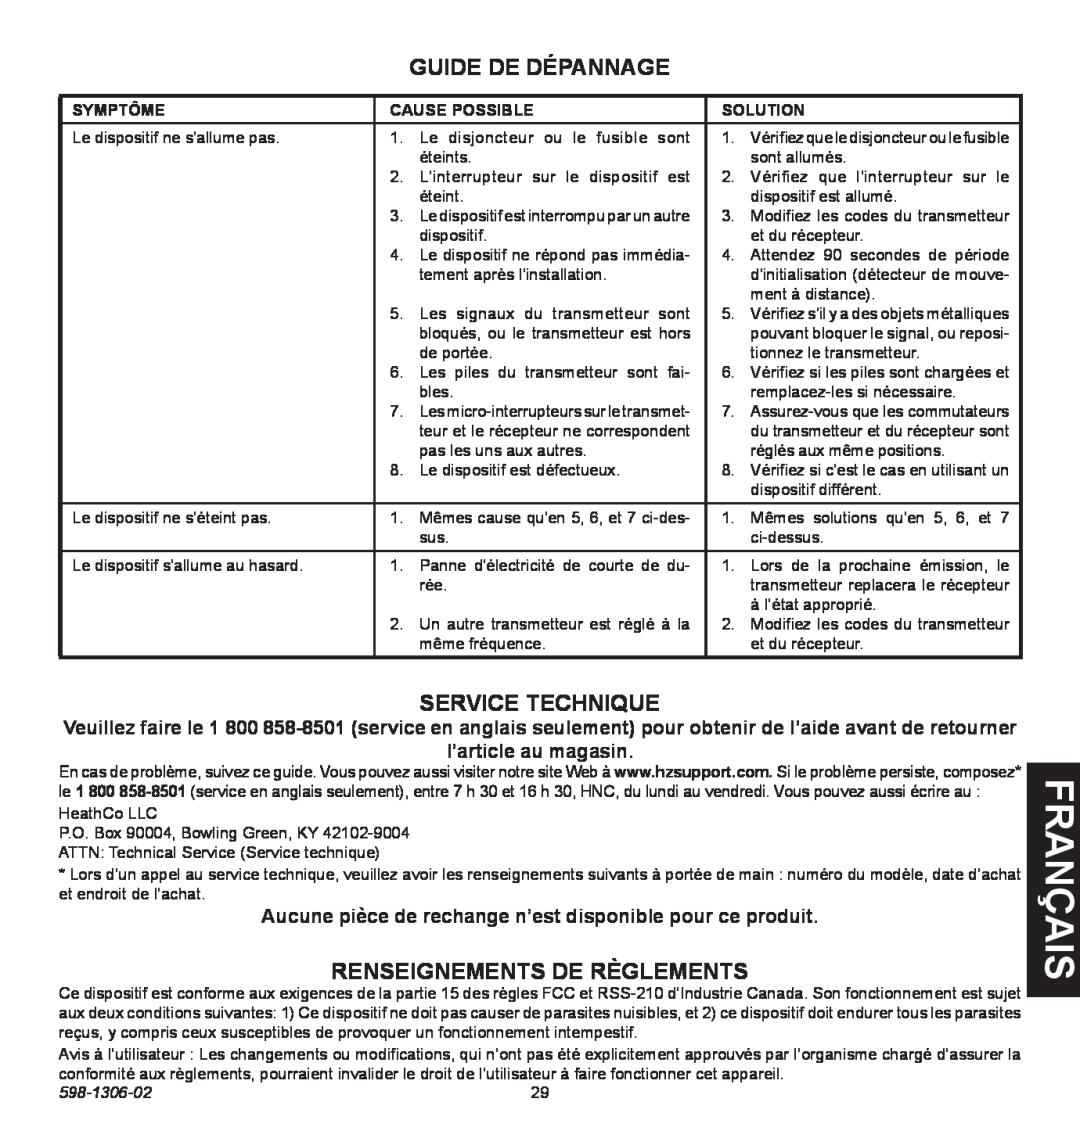 Heath Zenith 598-1306-02 manual is nça fra, Guide De Dépannage, Service Technique, Renseignements de règlements 